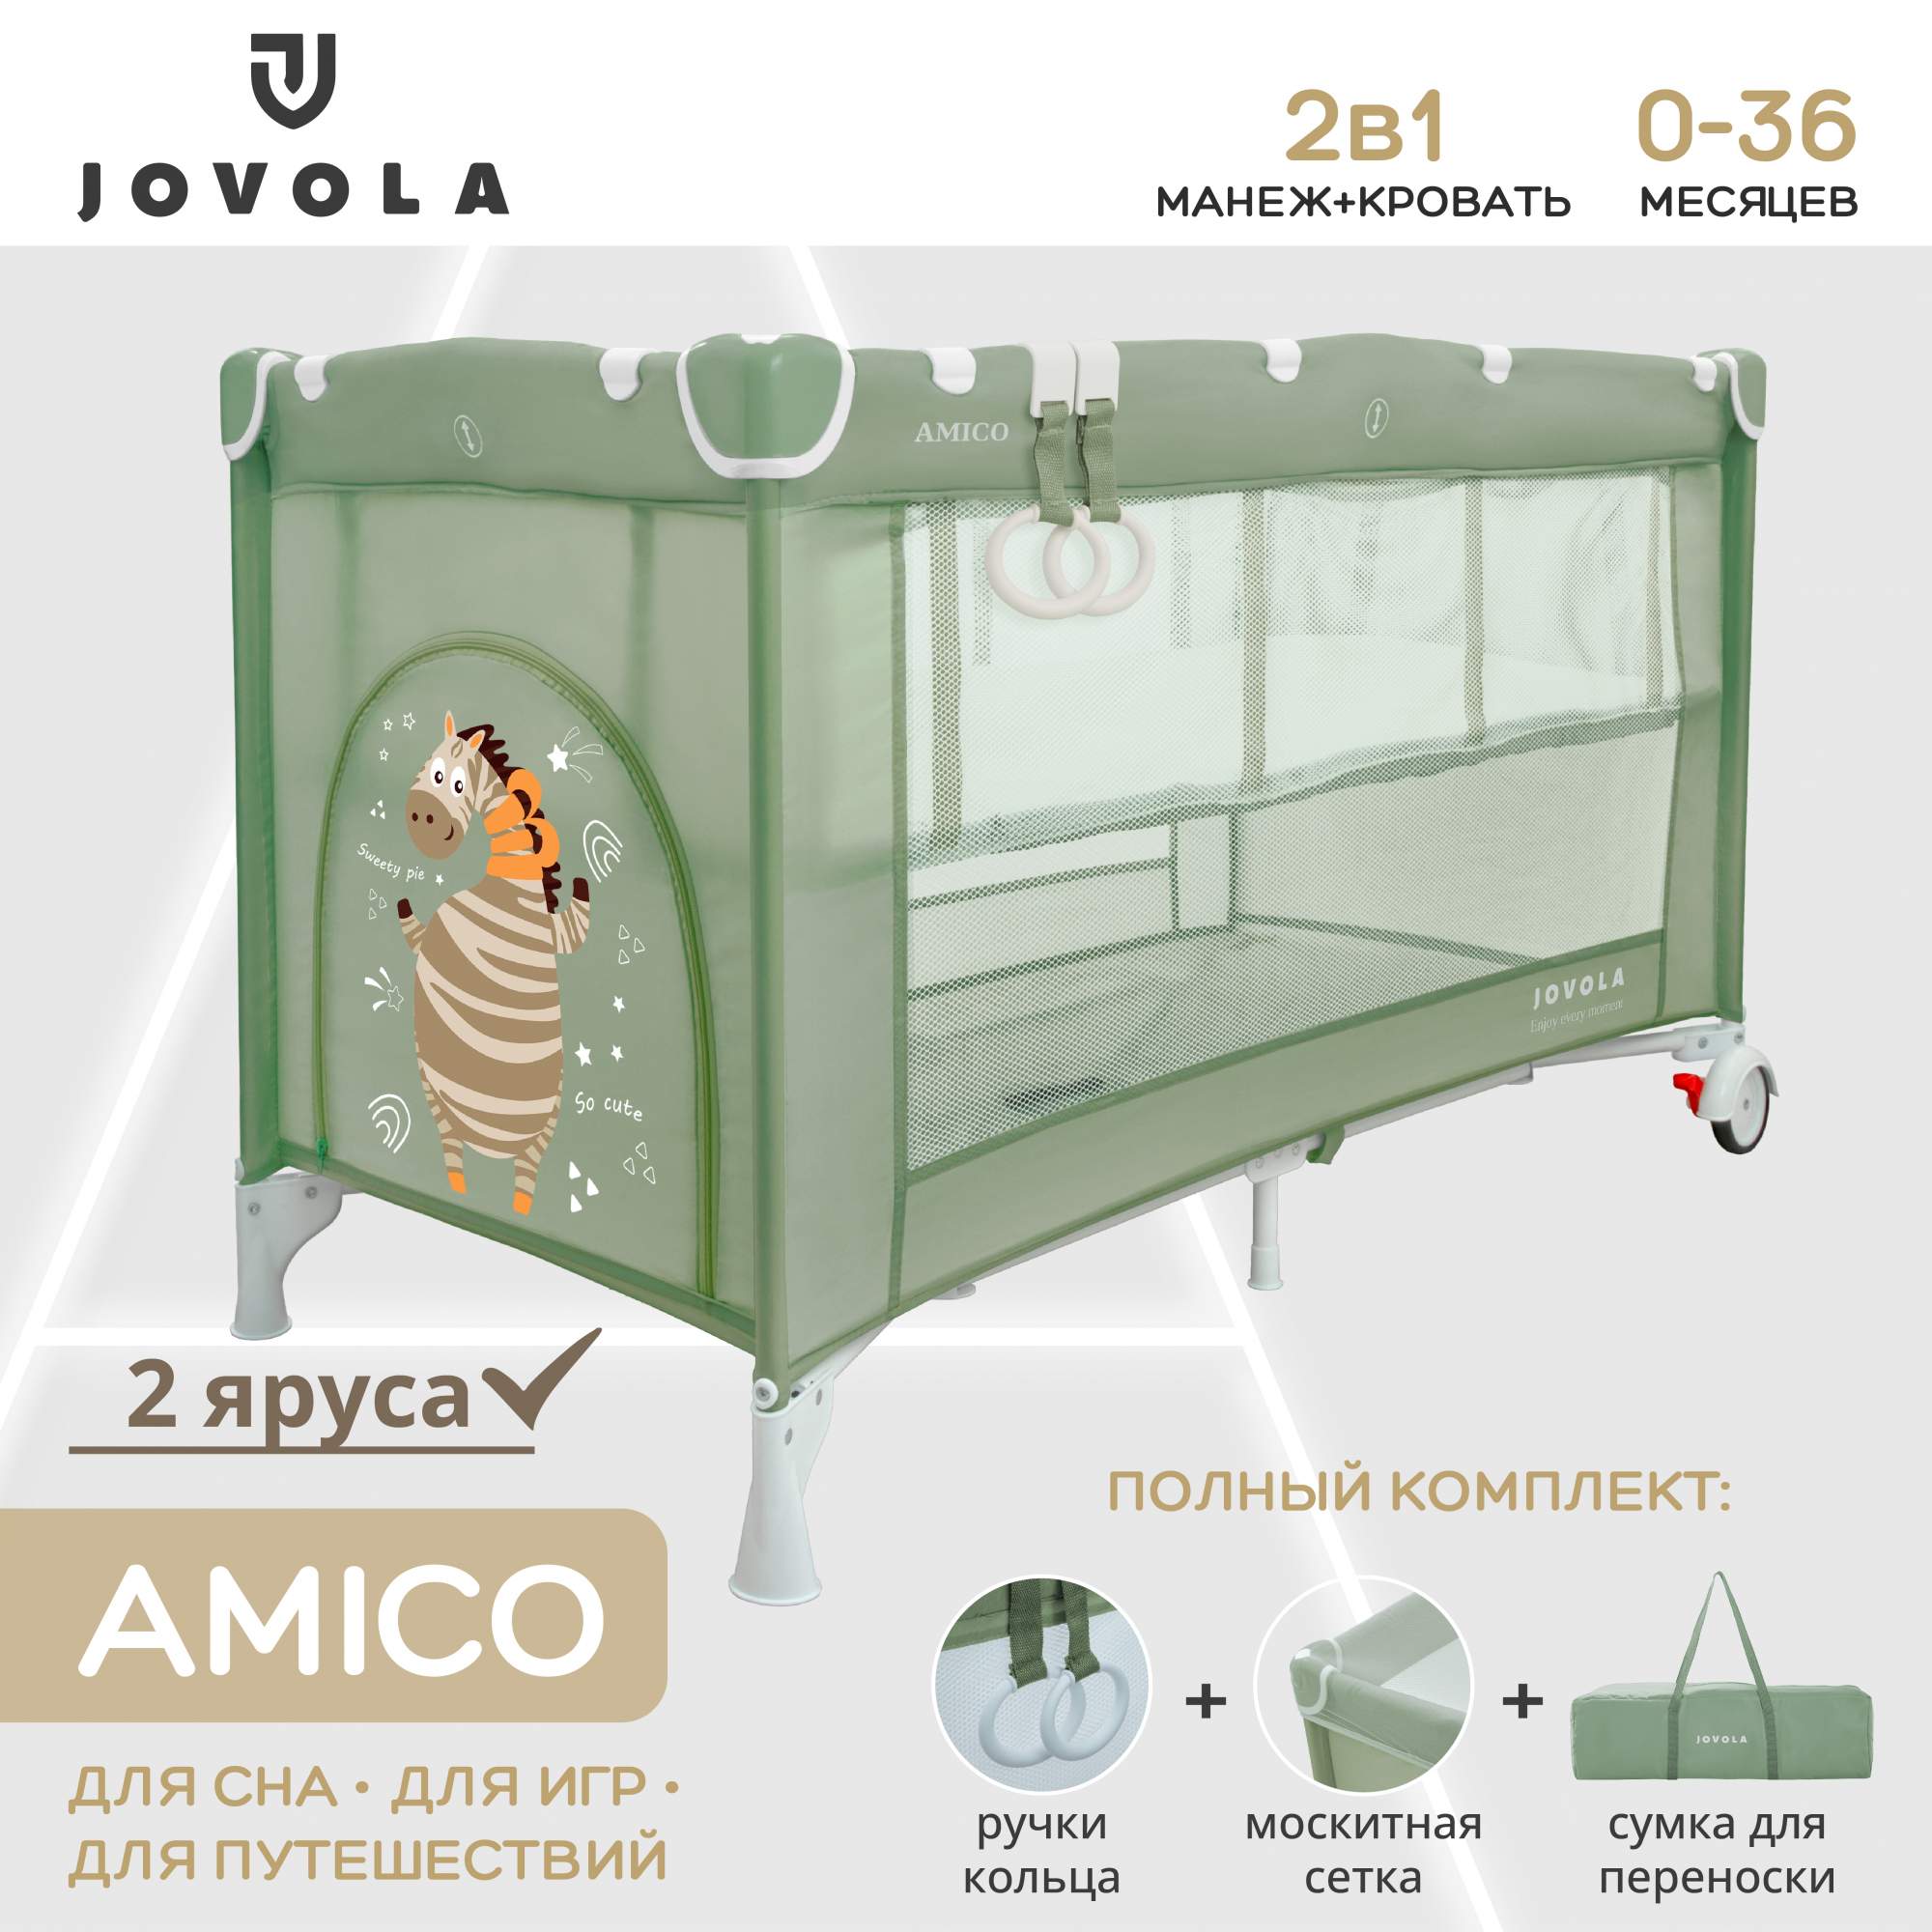 Манеж кровать детский JOVOLA AMICO для новорожденных складной 2 уровня зеленый манеж детский cam sonno orso luna 260